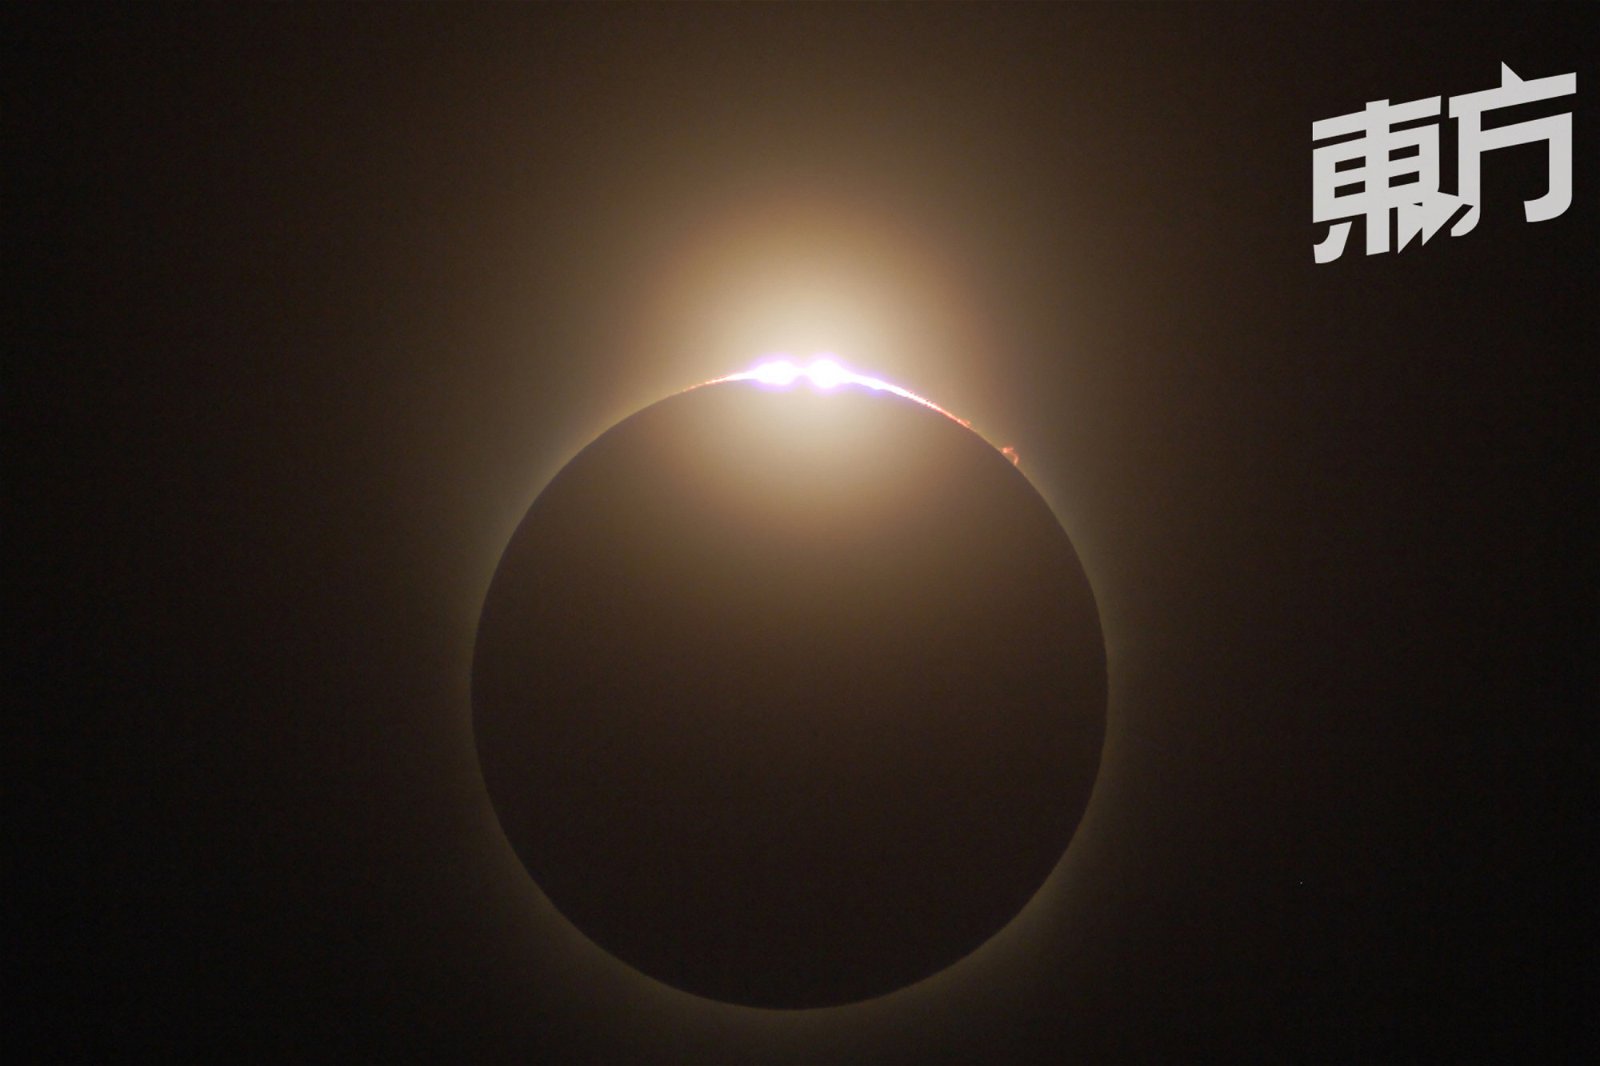 日全食发生时会看见的钻石环，陈伟伦笑称：“这应该是世界上最大的钻石戒指吧。”